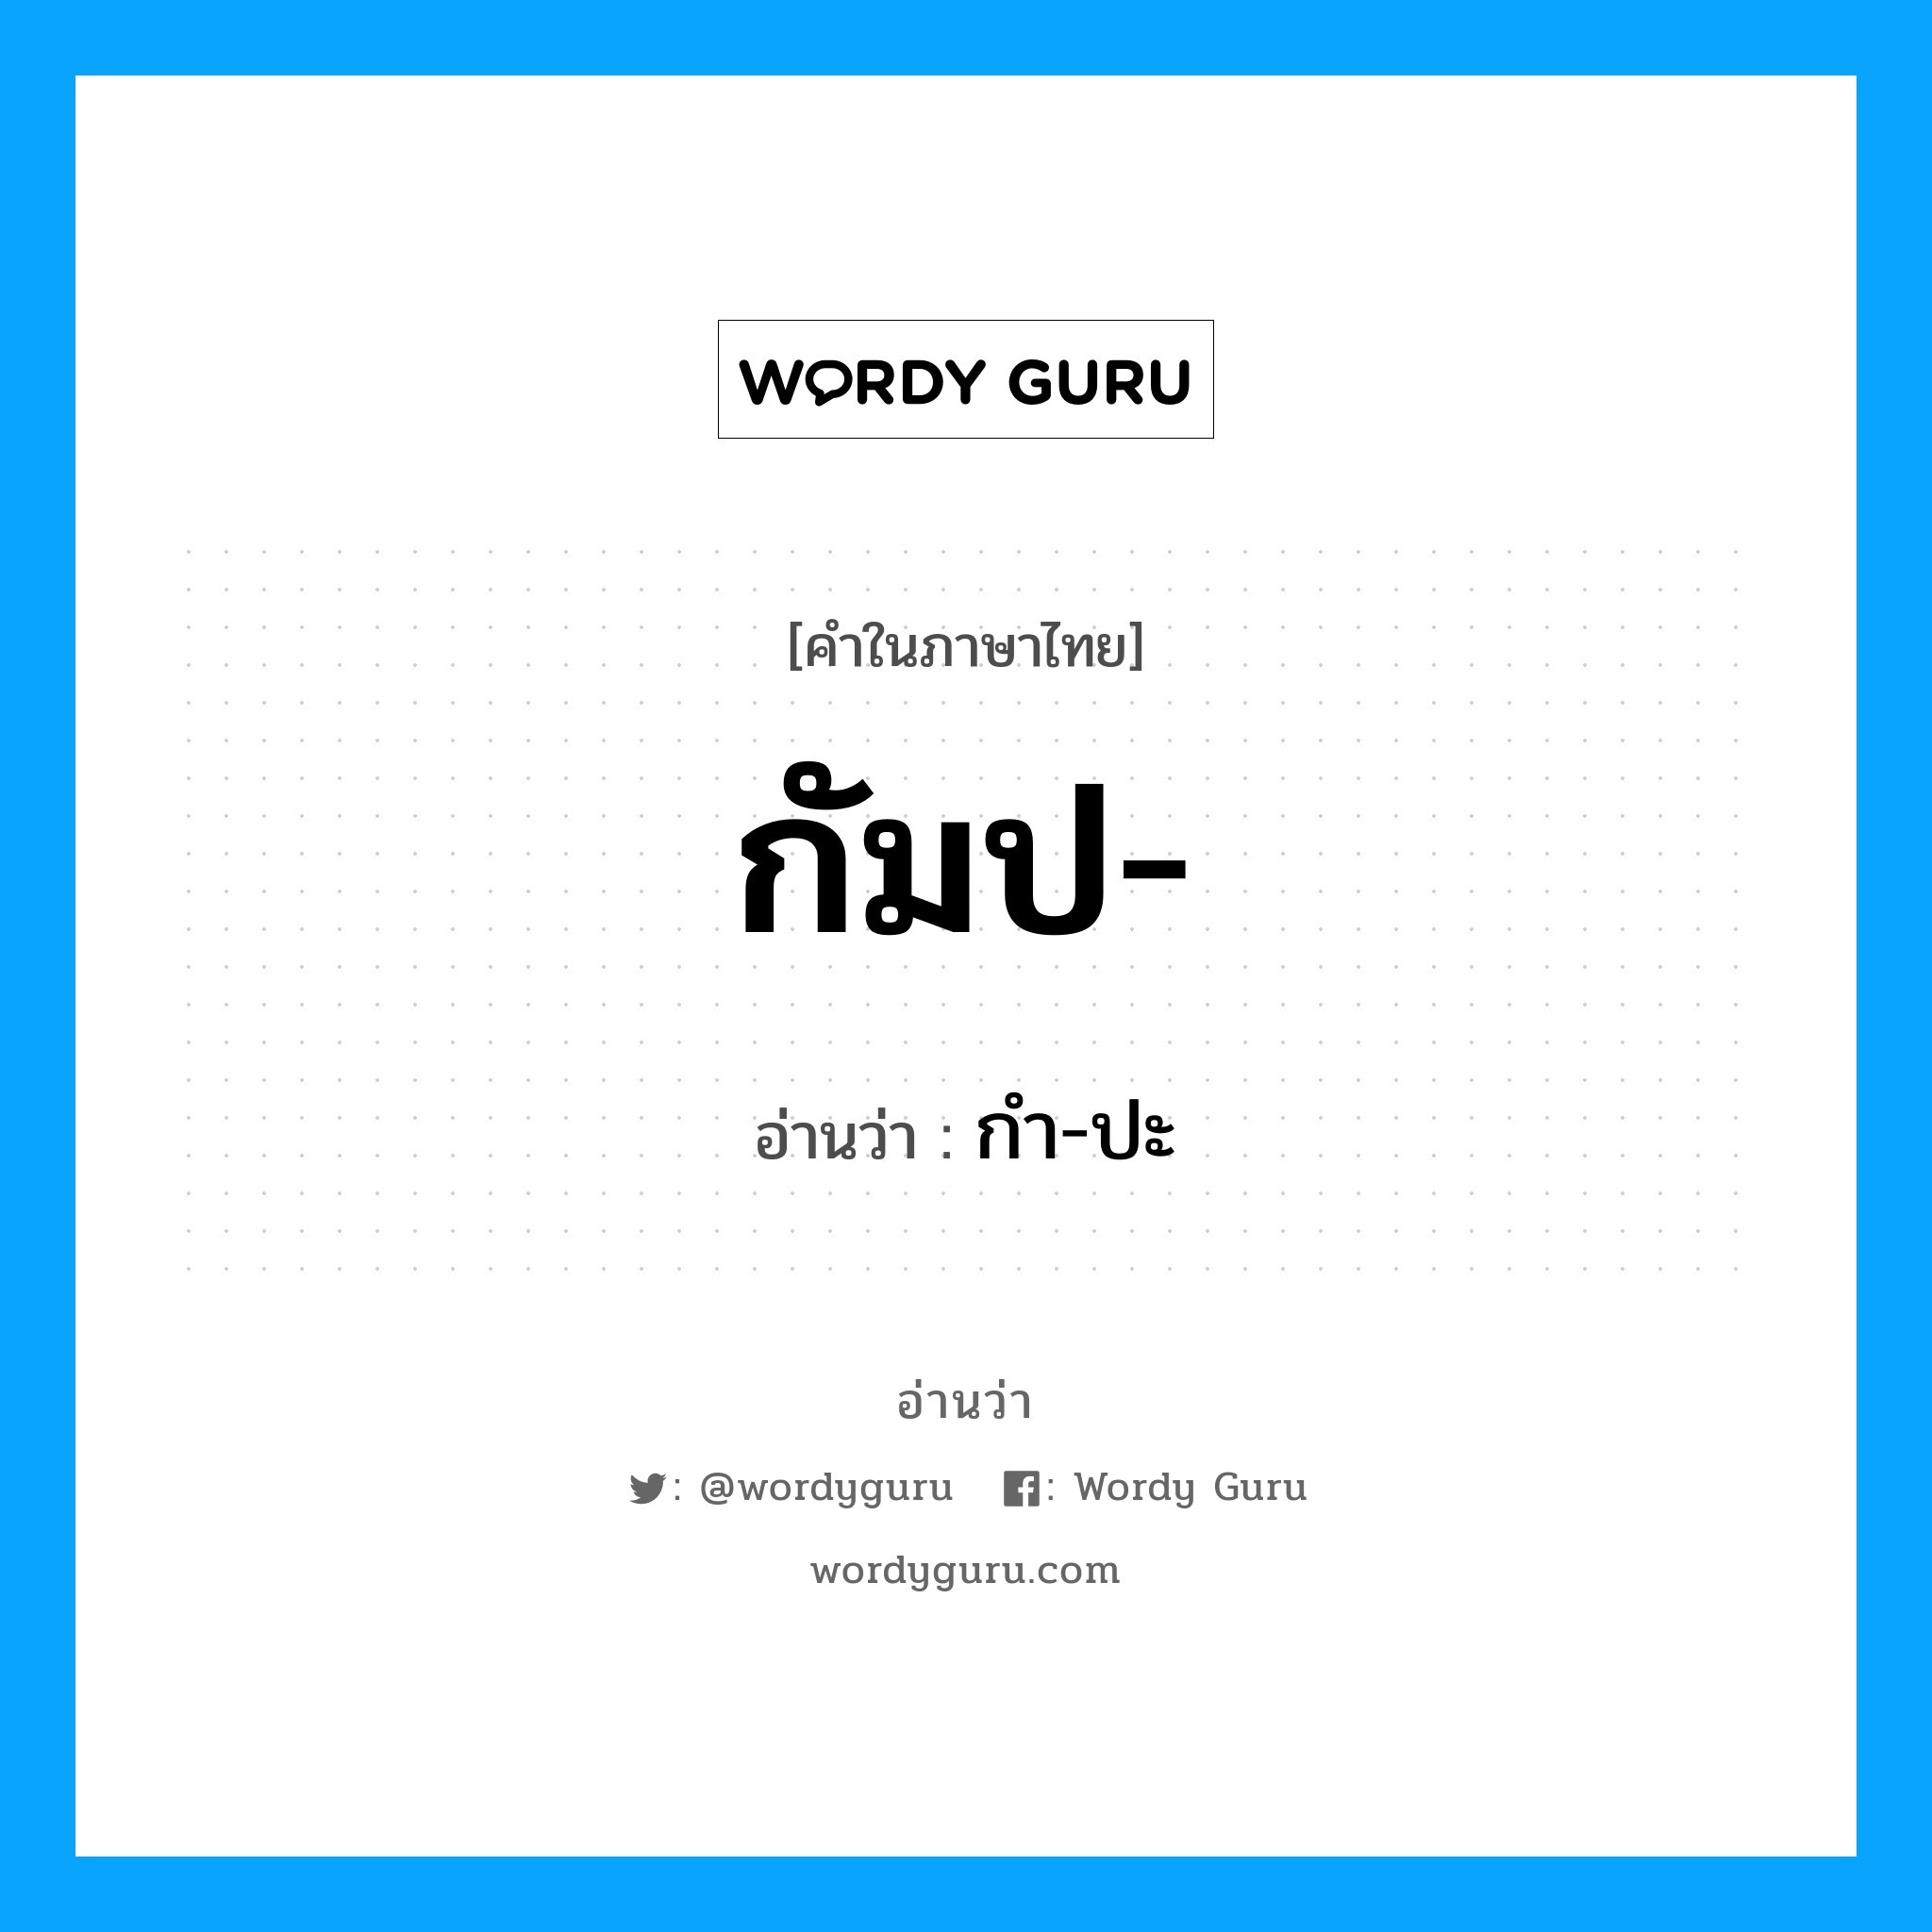 กัมป อ่านว่า?, คำในภาษาไทย กัมป- อ่านว่า กํา-ปะ